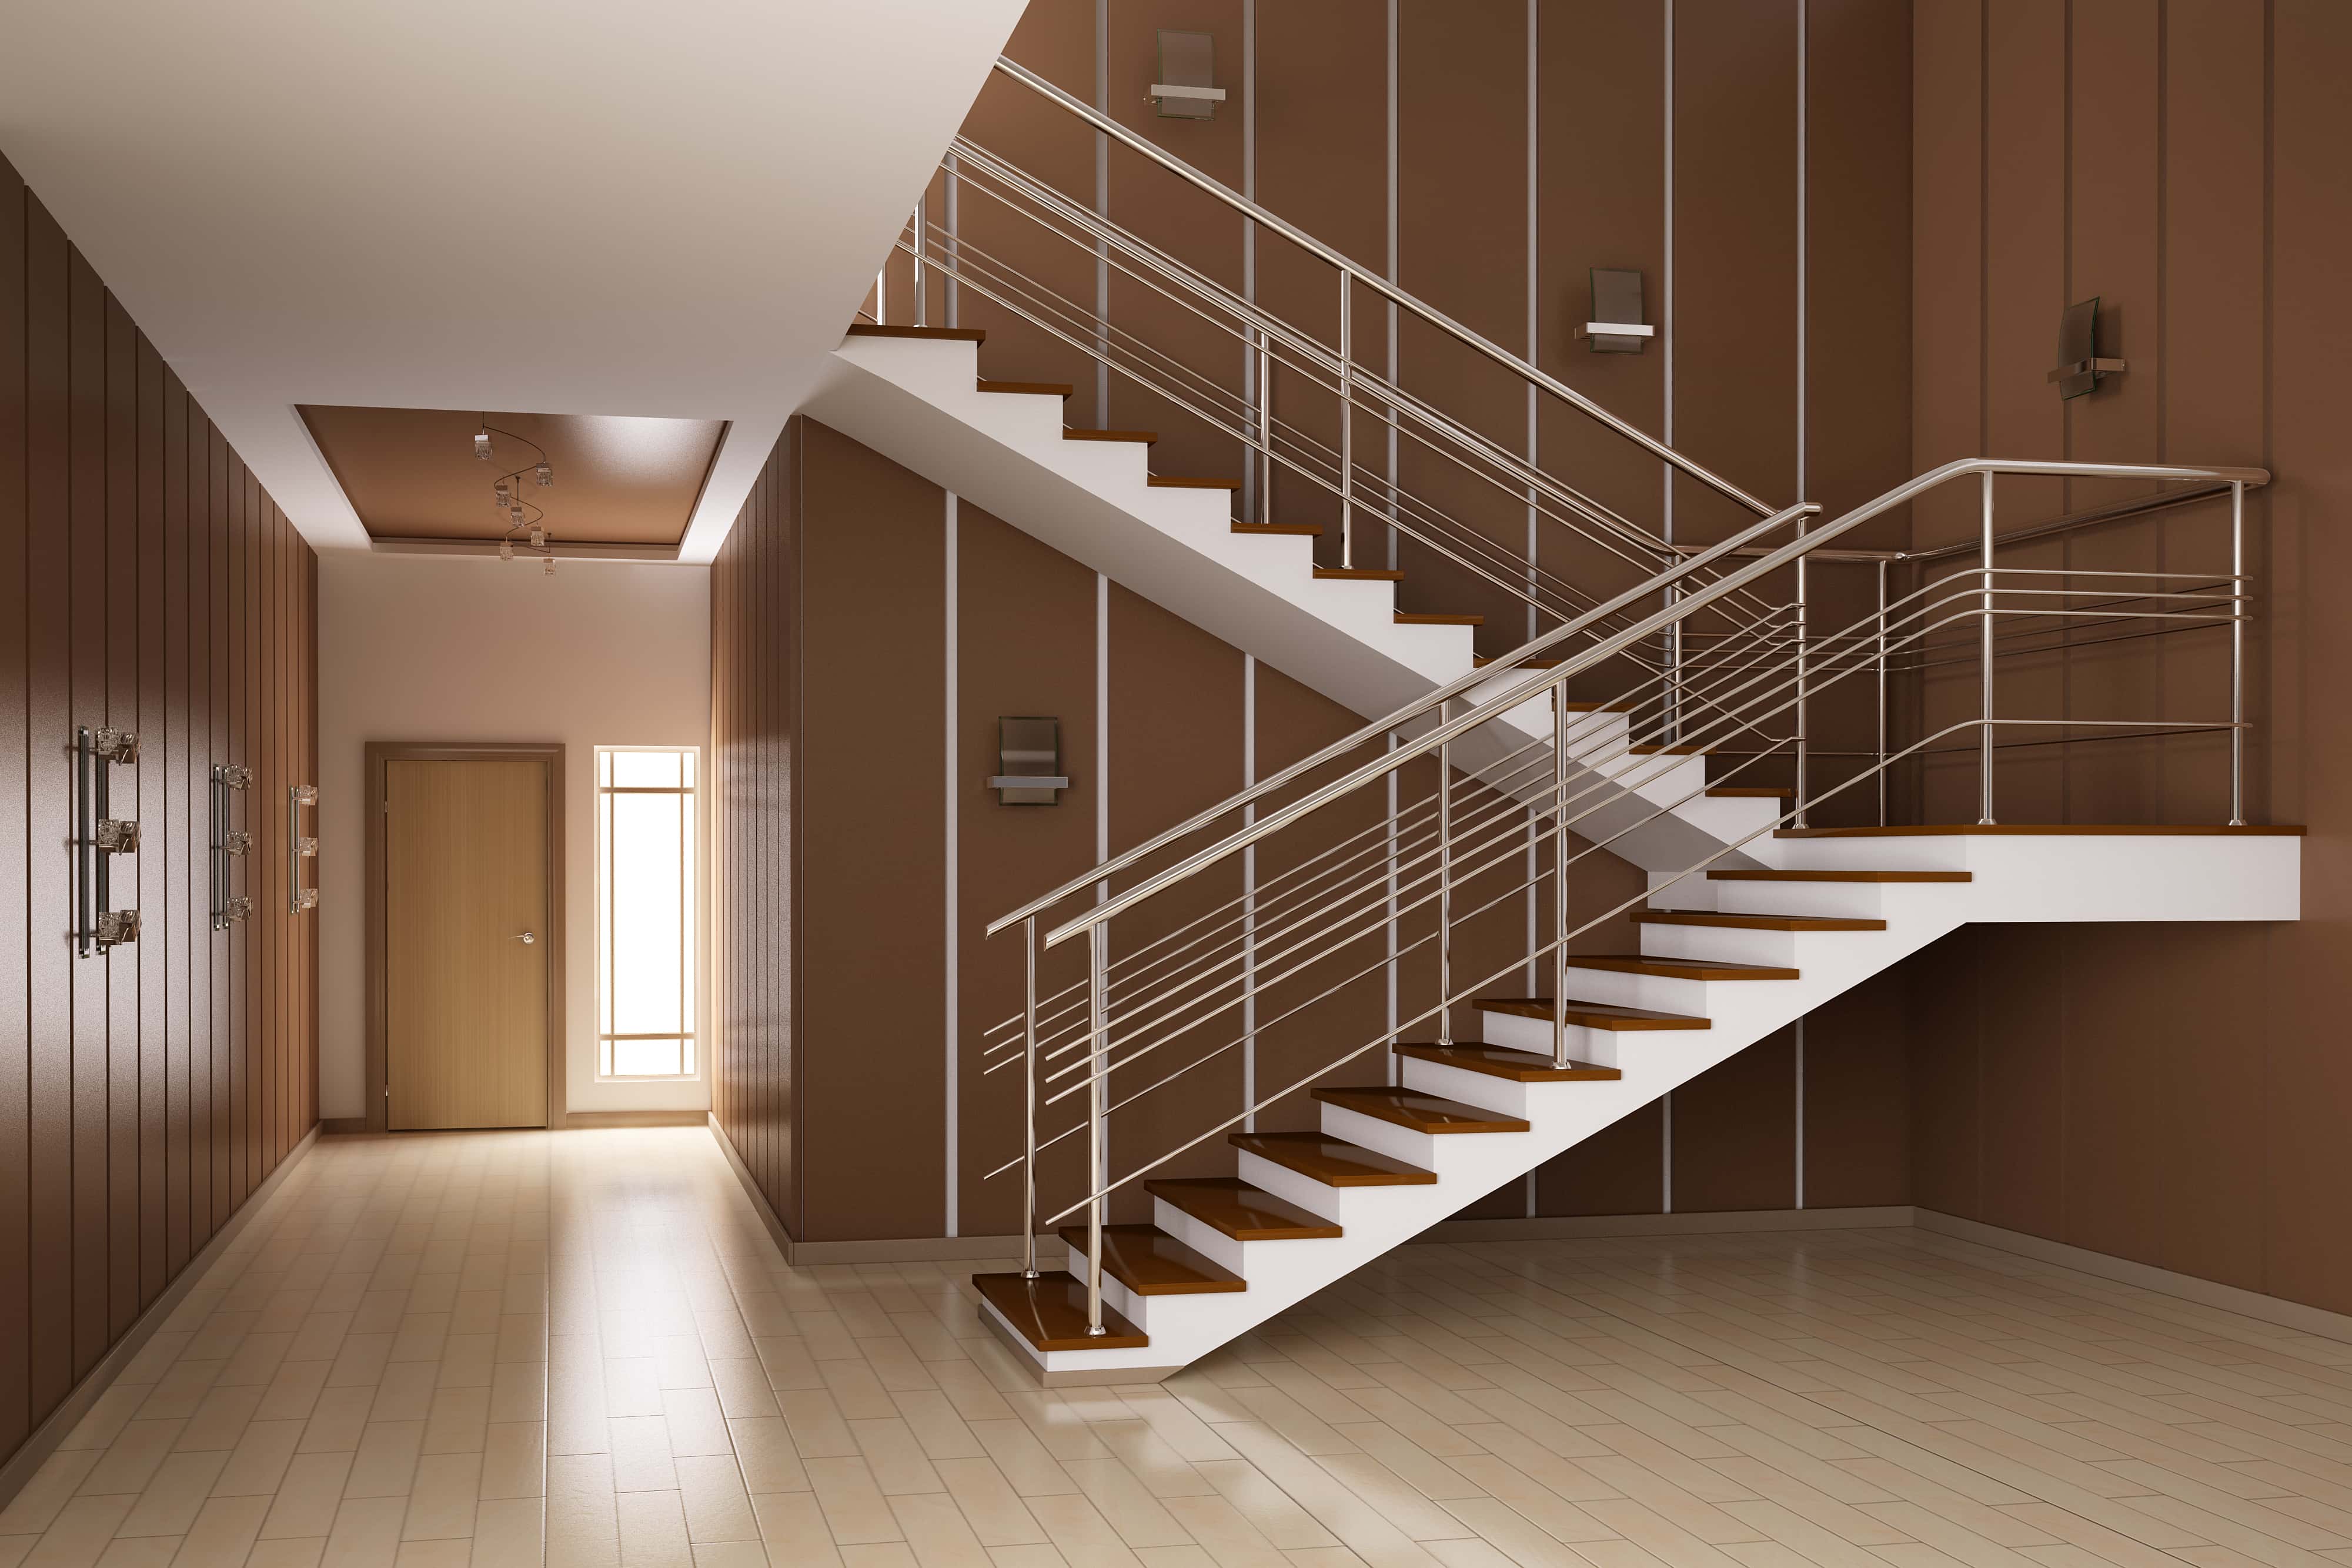 Reforma de escaleras en viviendas o locales antiguos: seguridad y estética